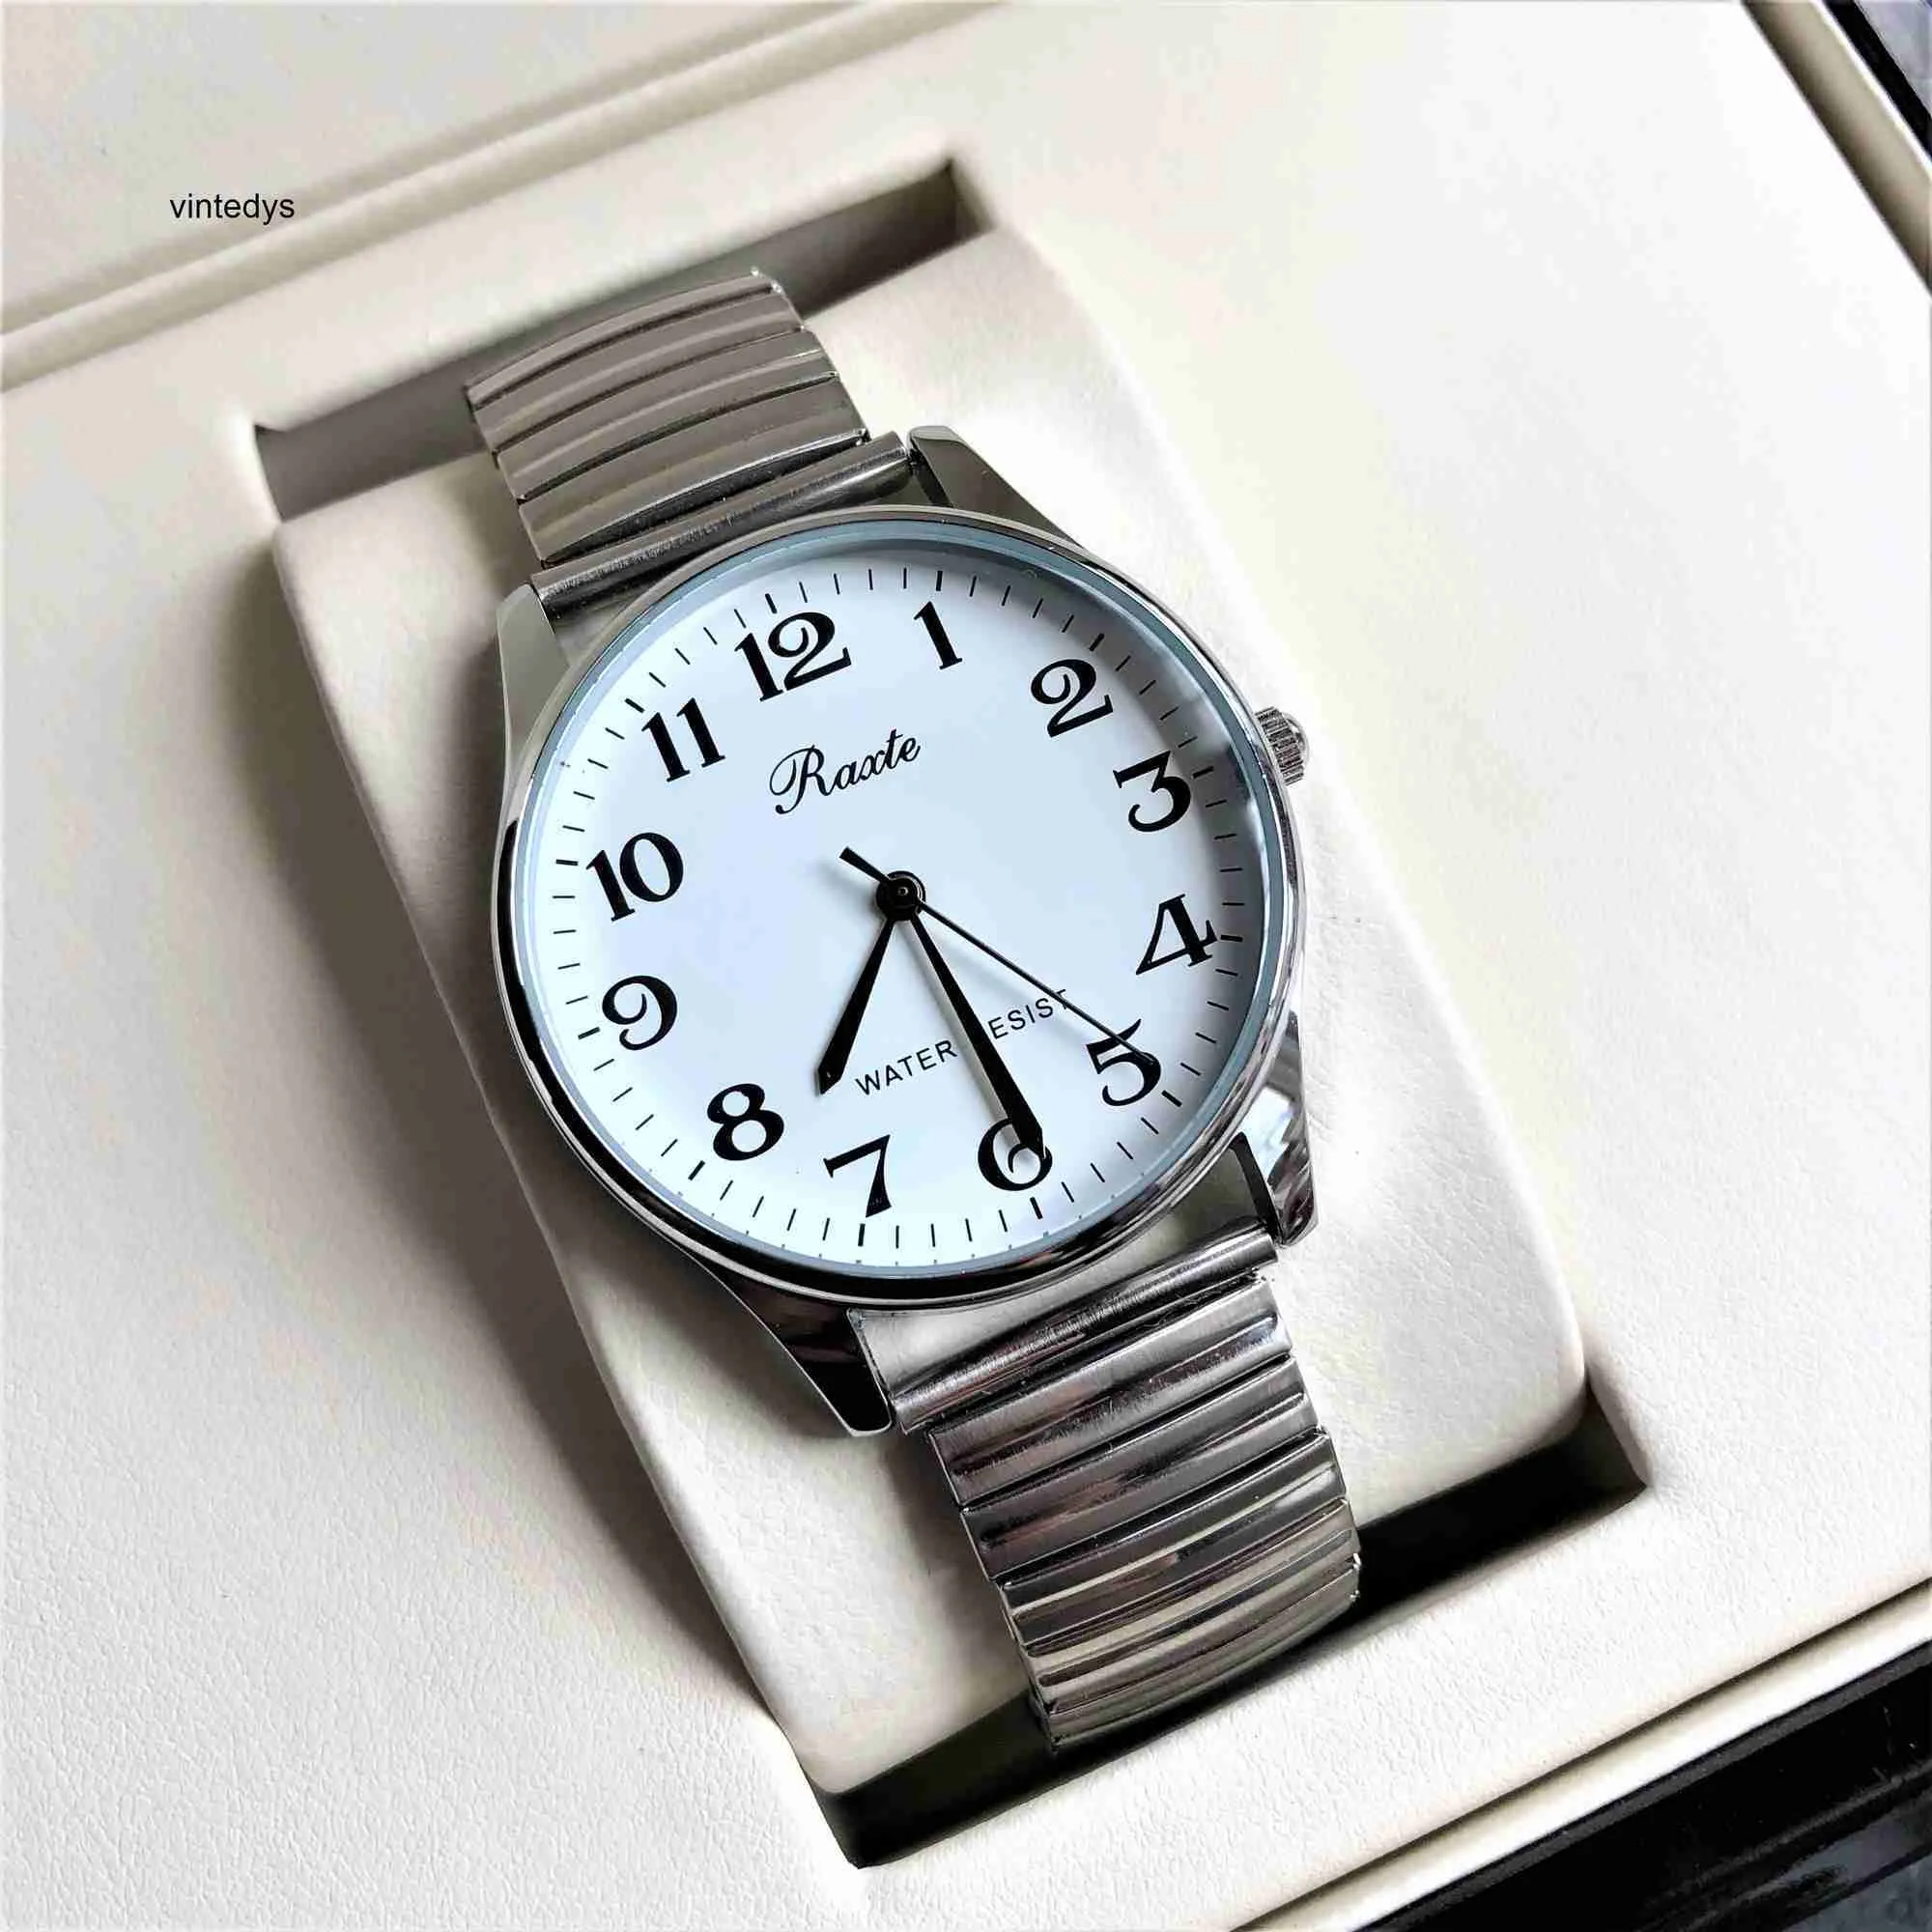 Luksusowy zegarek duży wybieranie elastyczne stalowe opaska duża liczba elektroniczna kwarcowa zegarek dla ludzi w średnim wieku i osób starszych Wodoodpornych mężczyzn